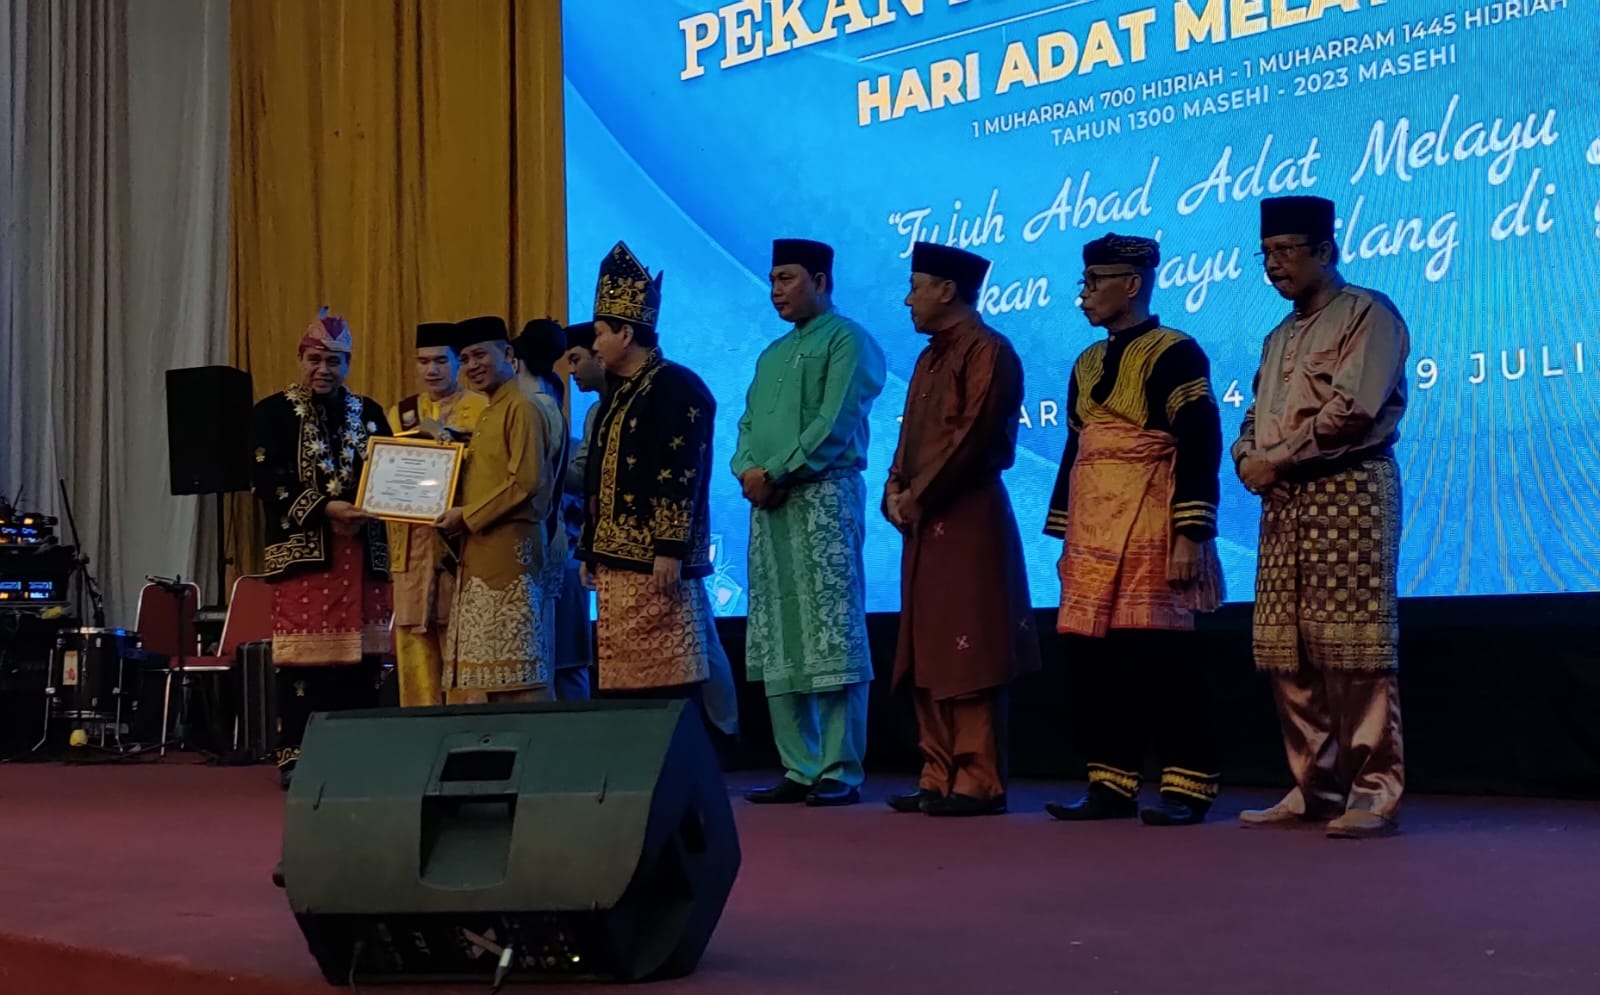 LAM Provinsi Jambi Berikan Penghargaan ke 7 Bupati/Walikota di Acara Puncak Pekan Adat Melayu Jambi